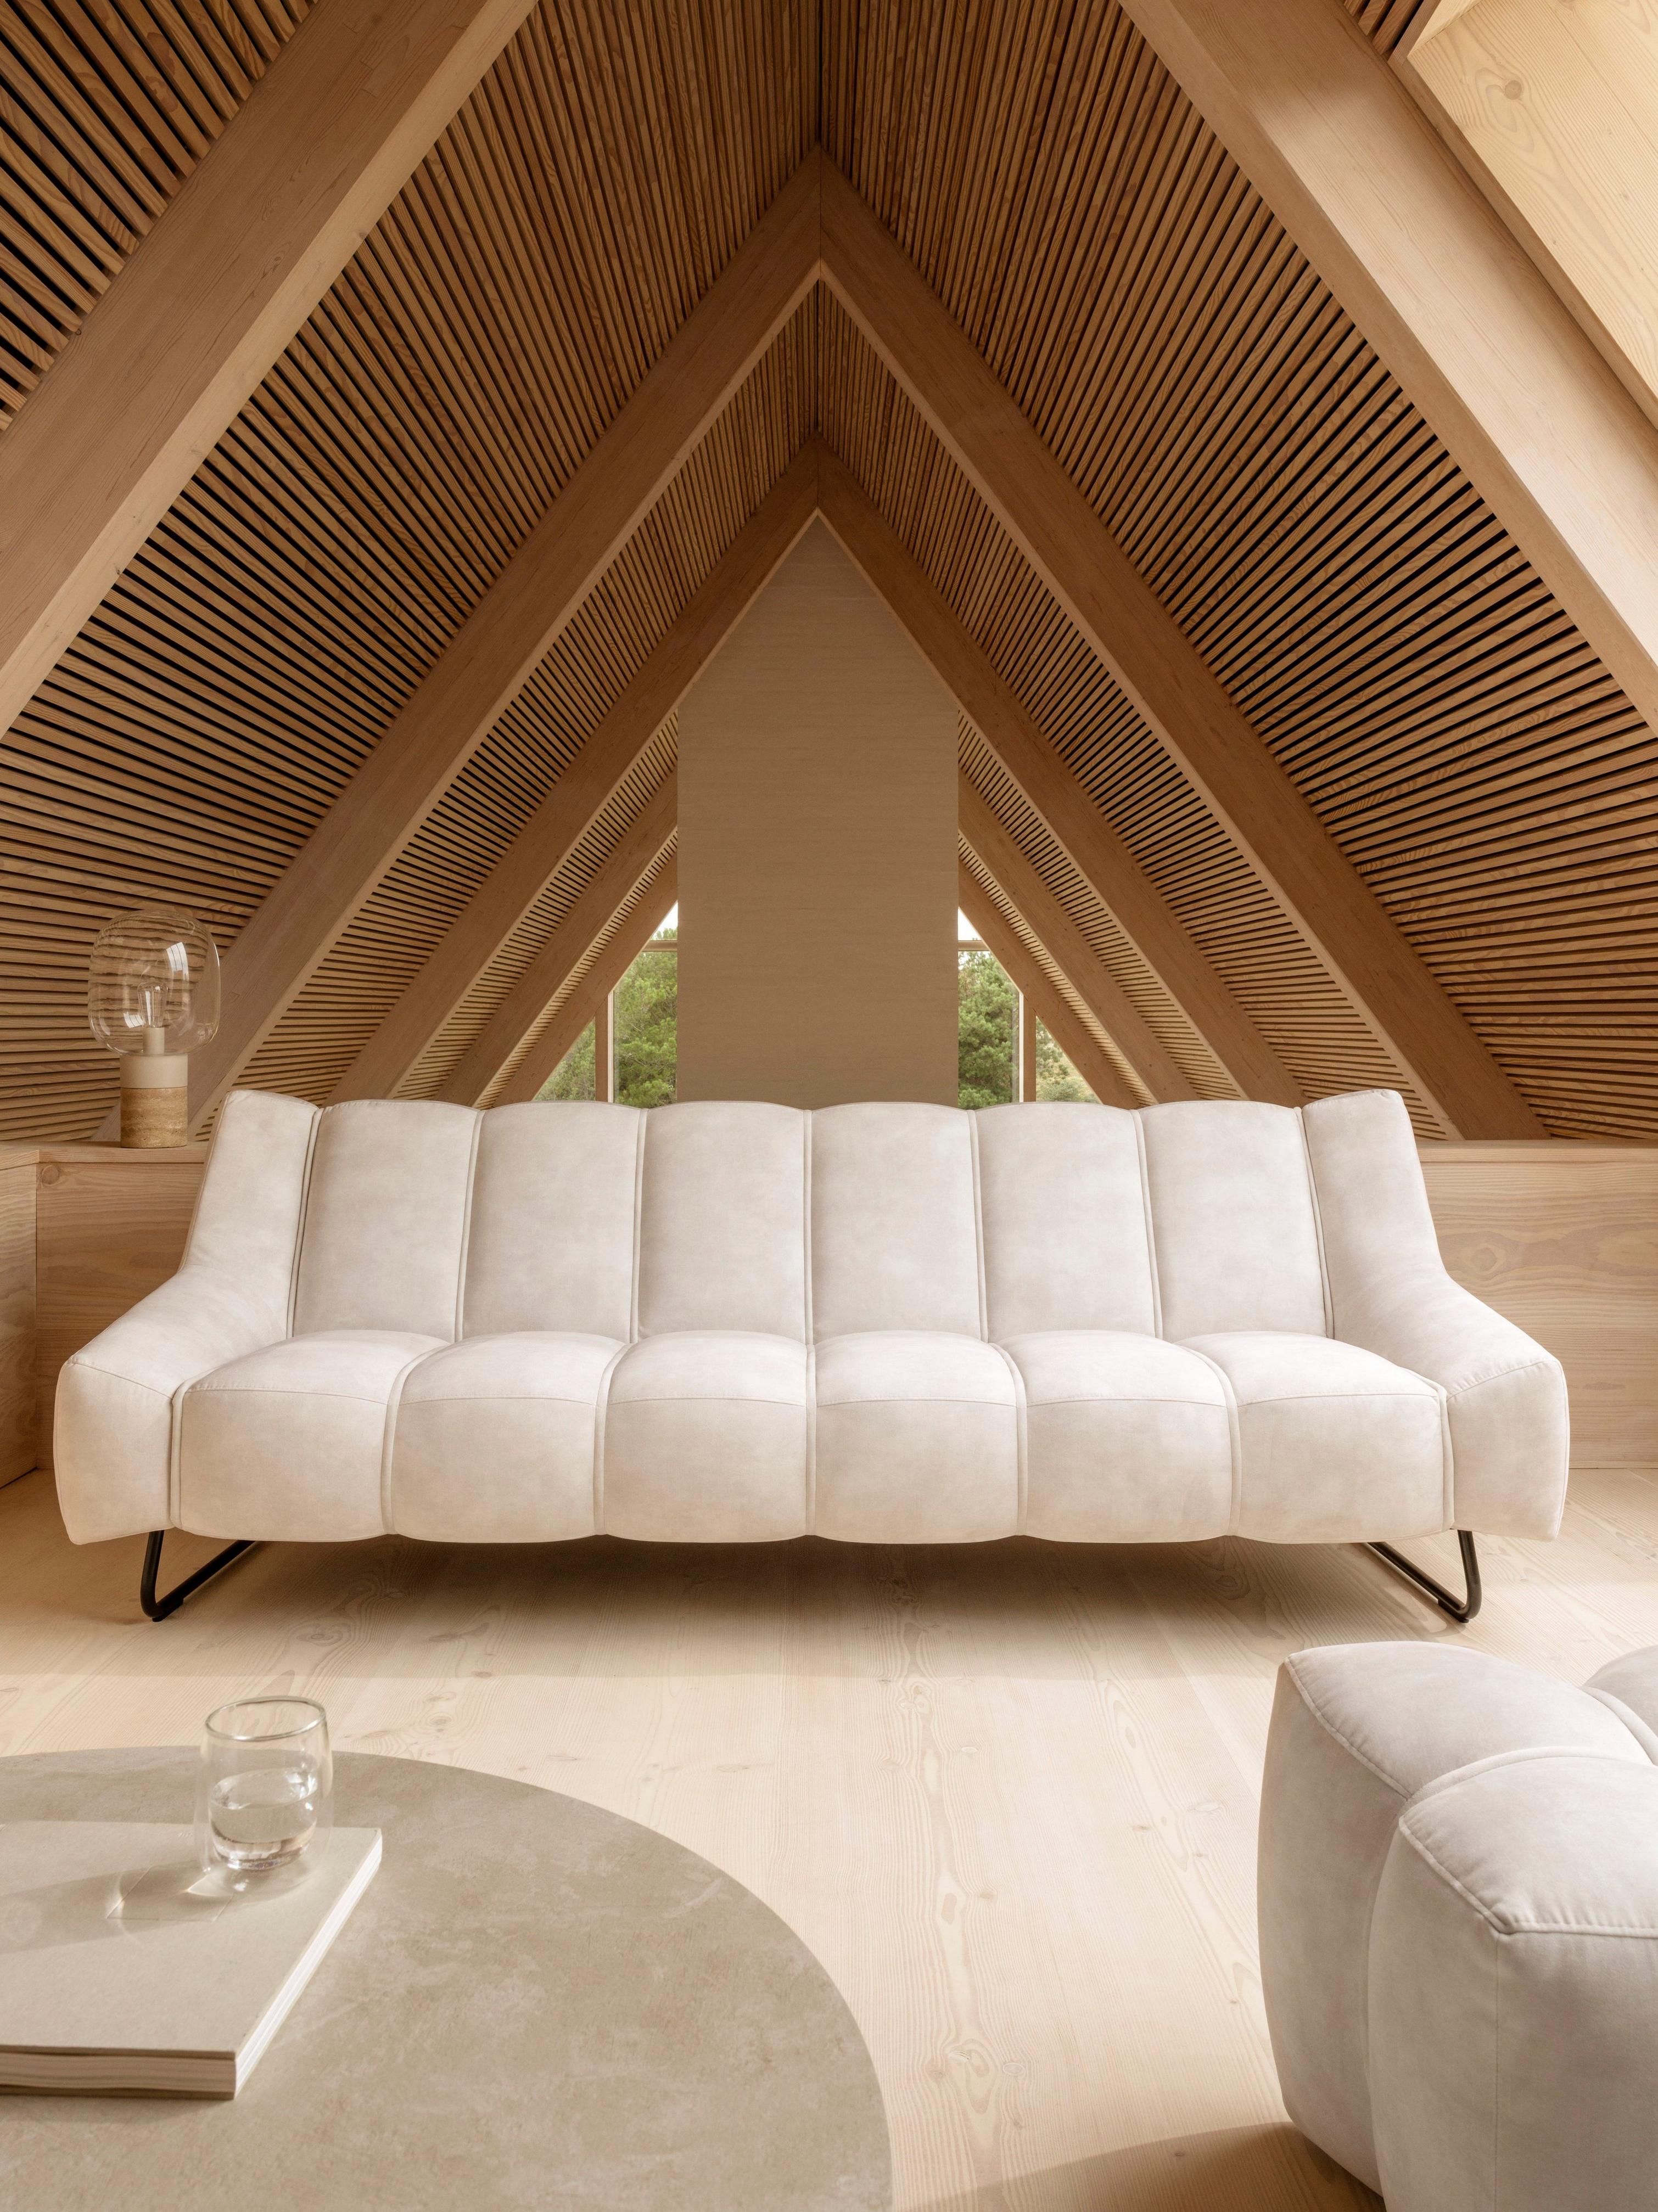 米色 Ravello 面料衬垫 Nawabari 3 人位沙发打造中性色调 A 字型起居室。